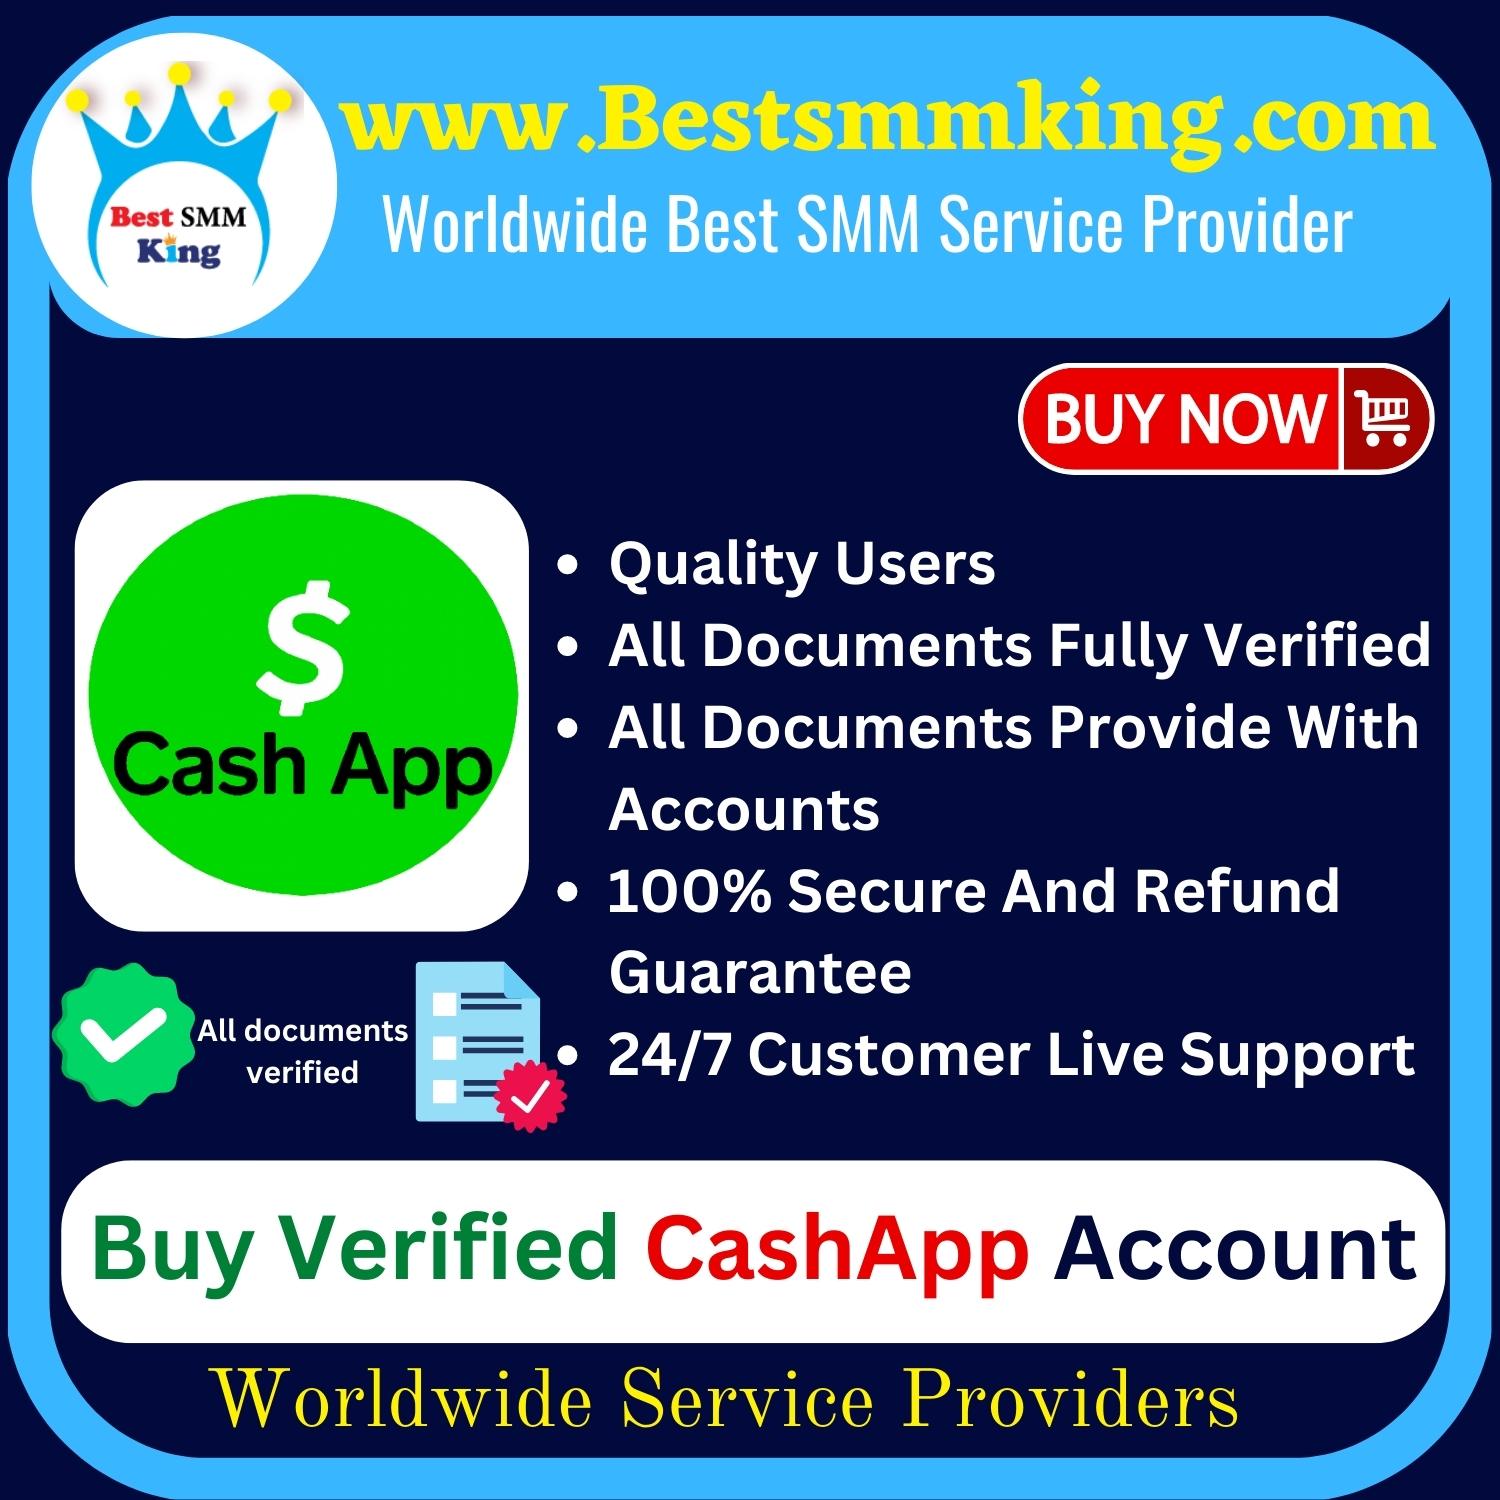 Buy Verified Cash App Account | BTC Enable & Documents Verified